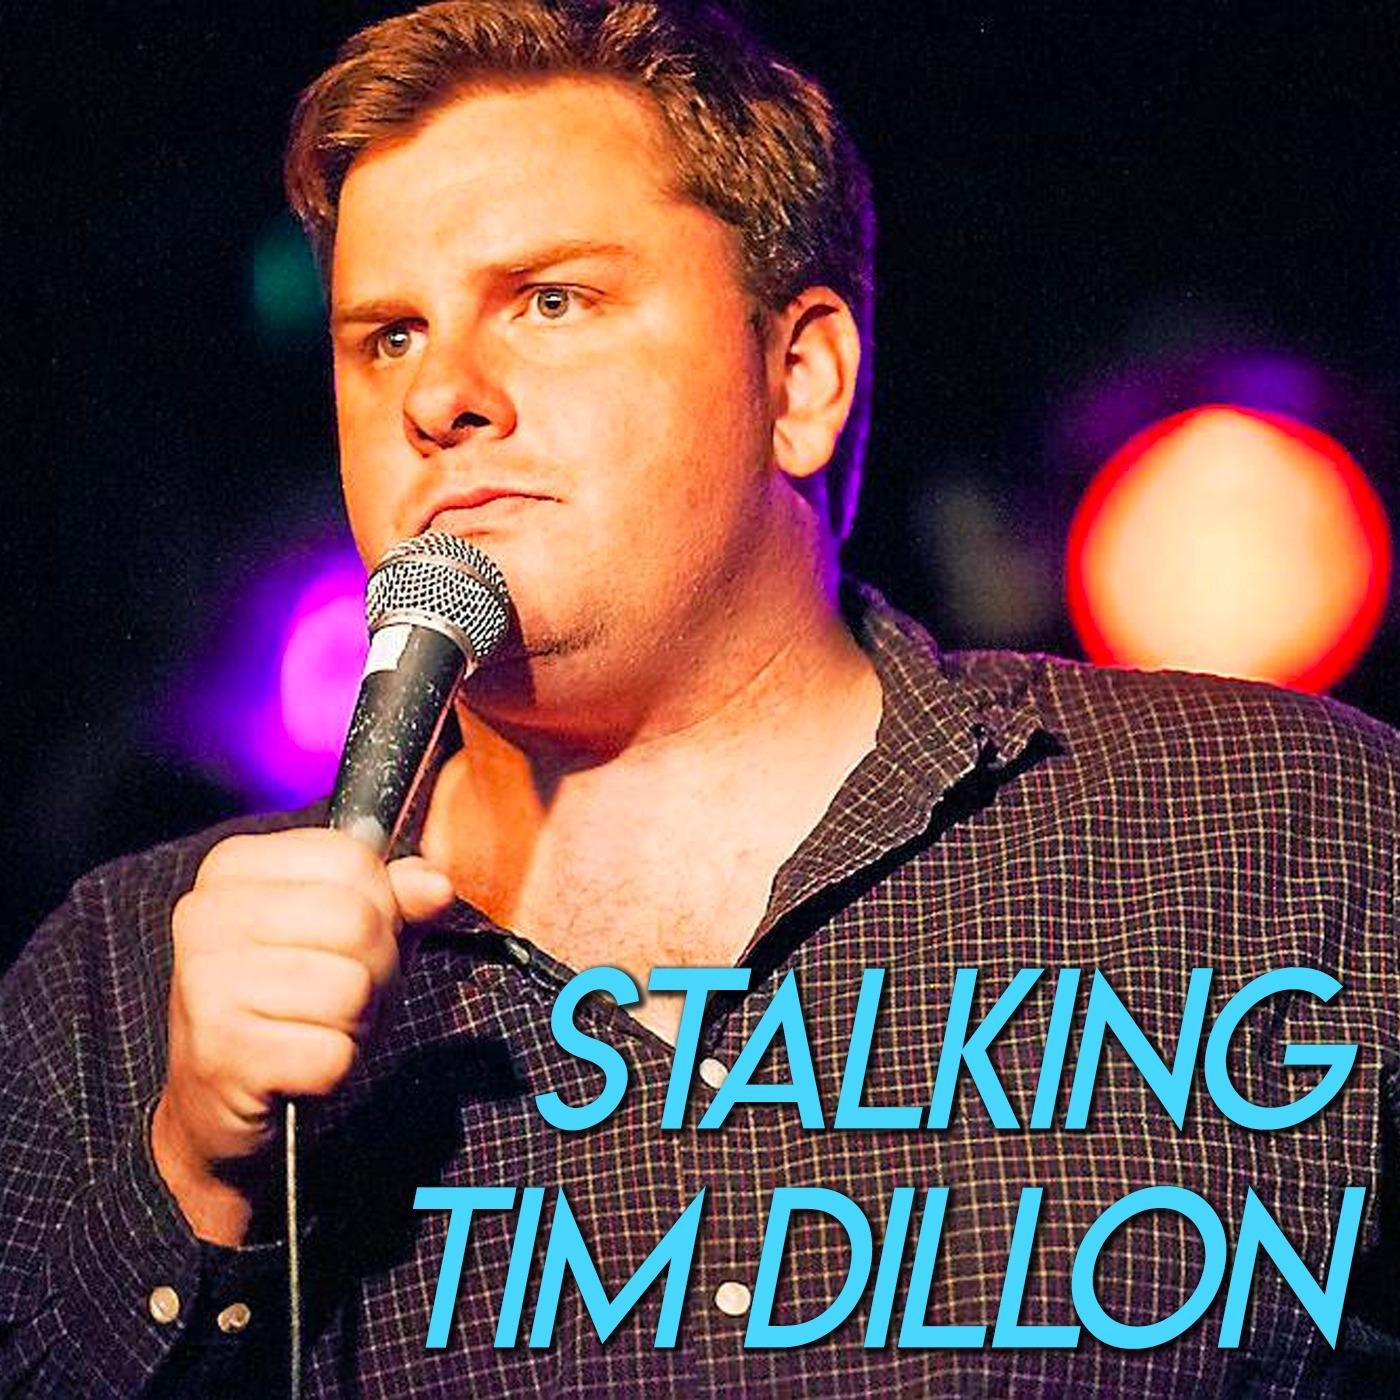 Stalking Tim Dillon